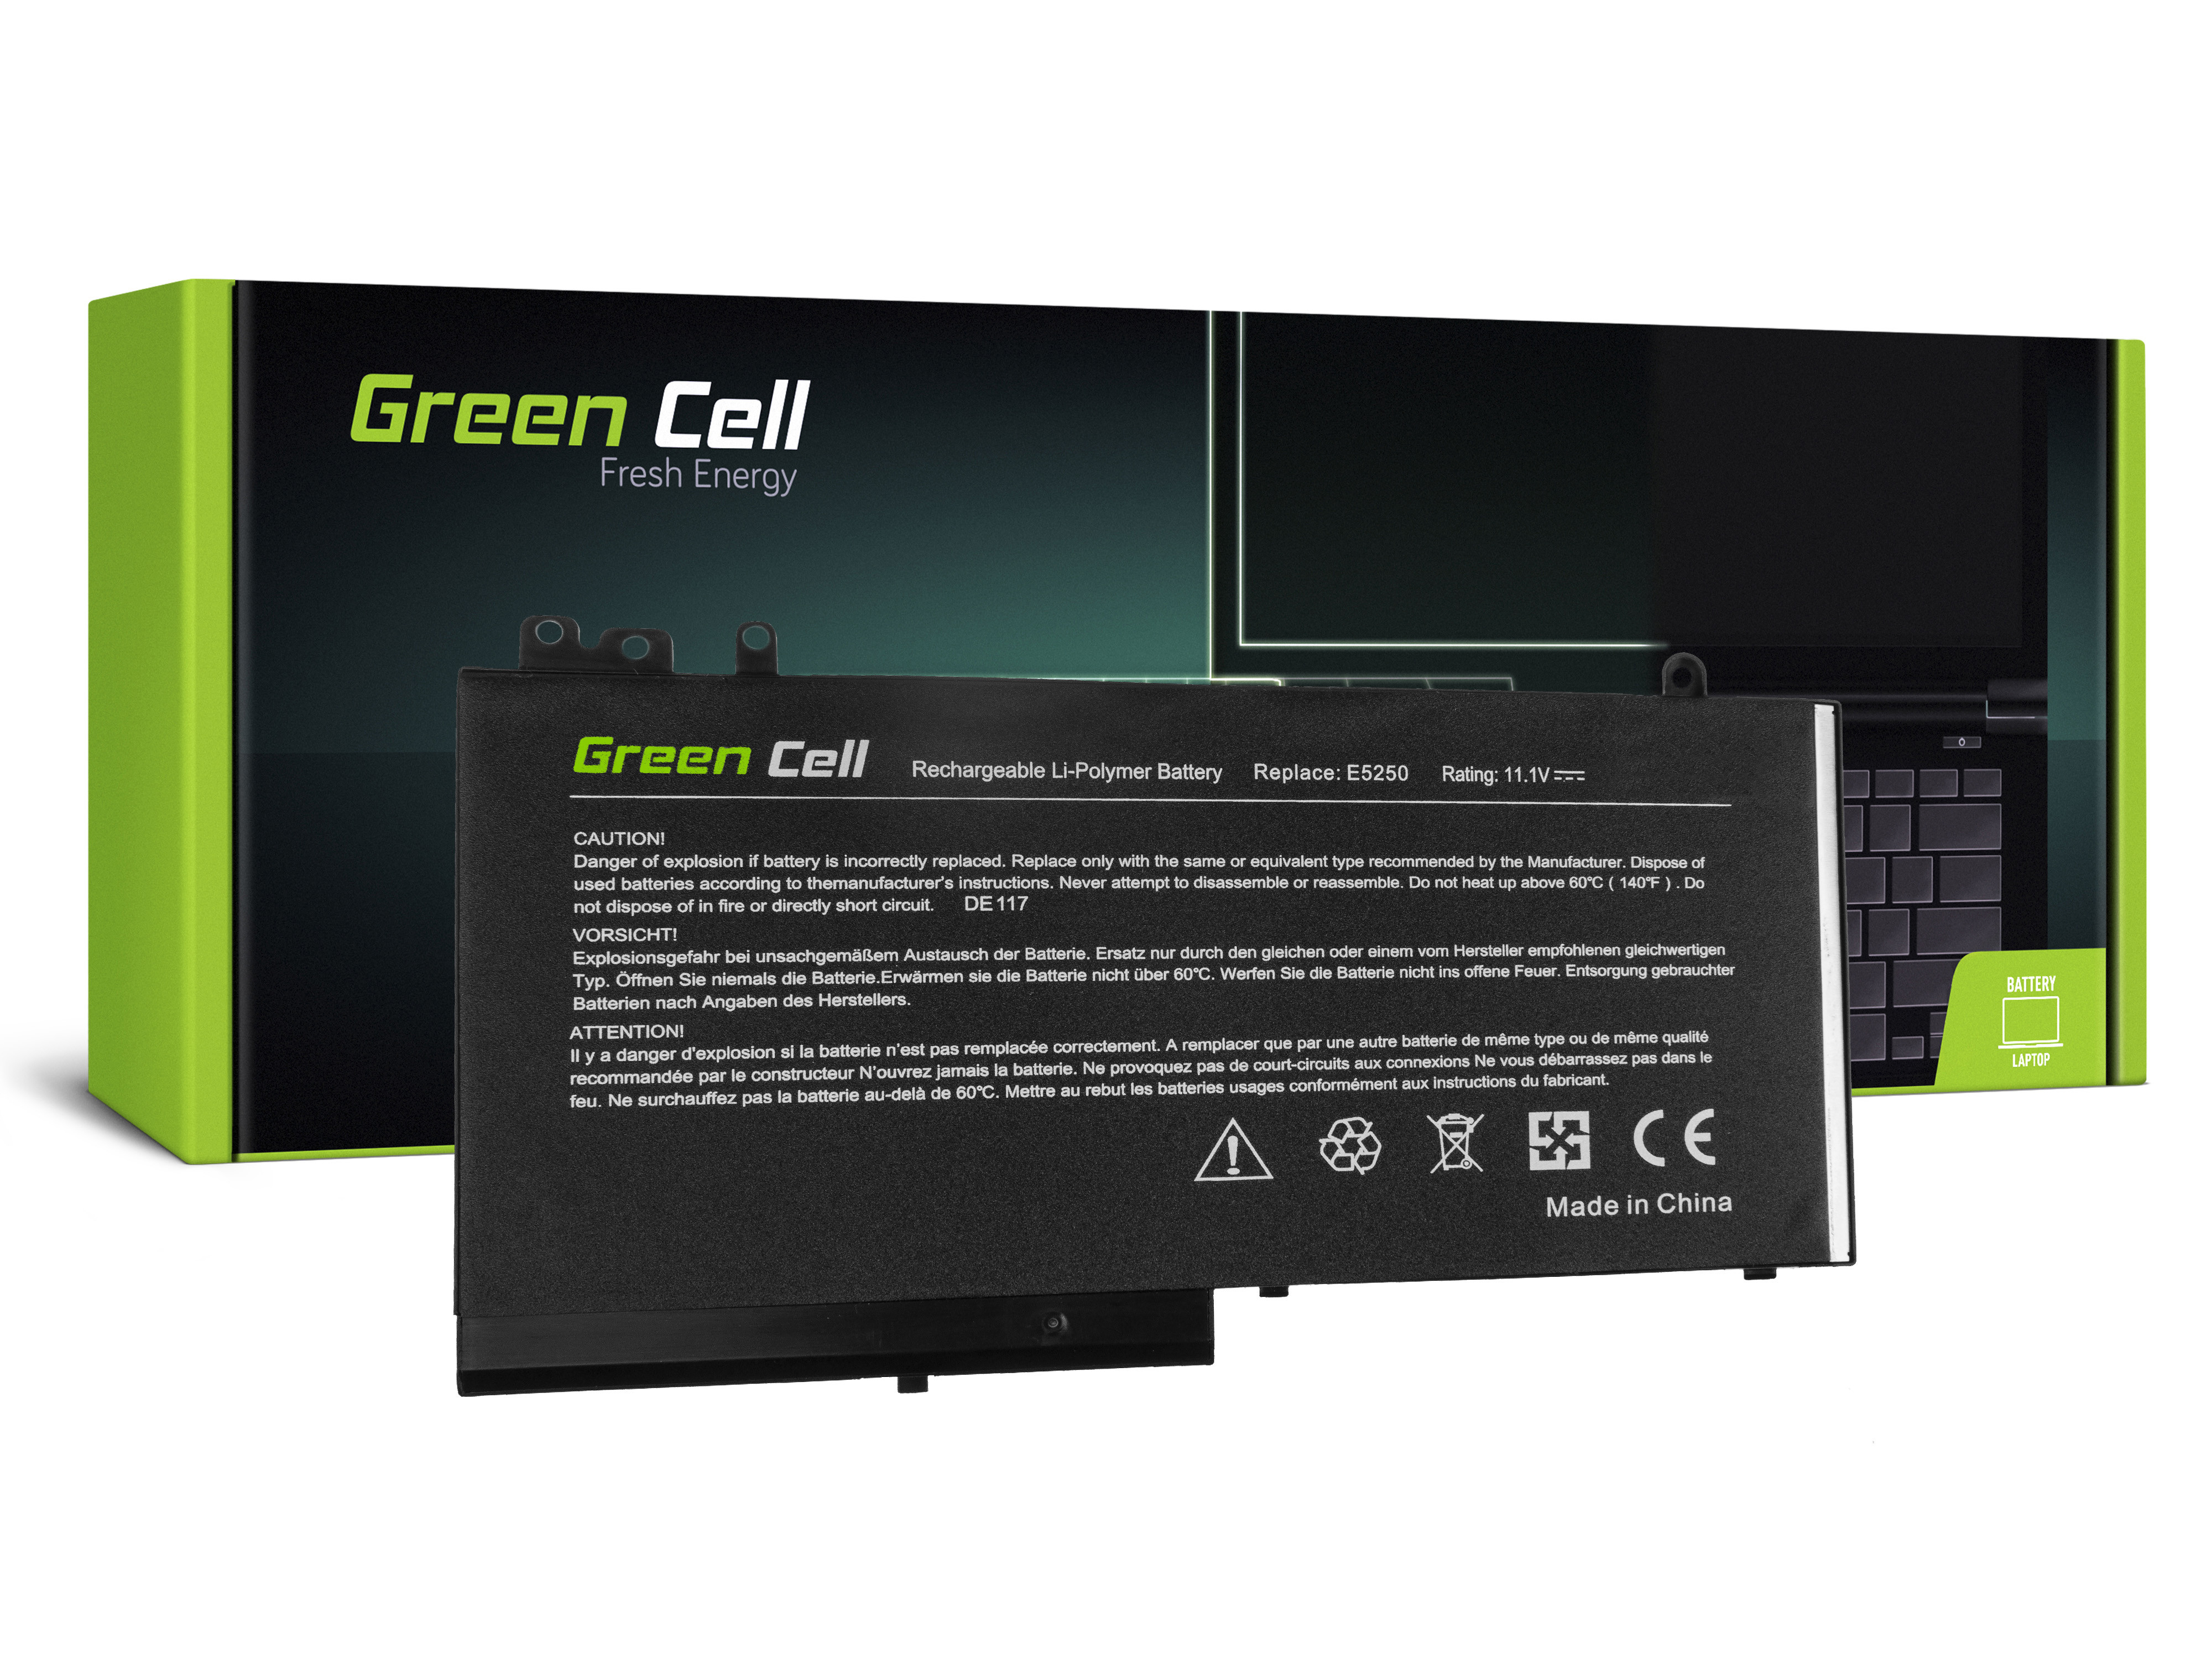 Green Cell DE117 Baterie Dell Latitude 11/3150/3160/12/E5250/E5270 2900mAh Li-Pol